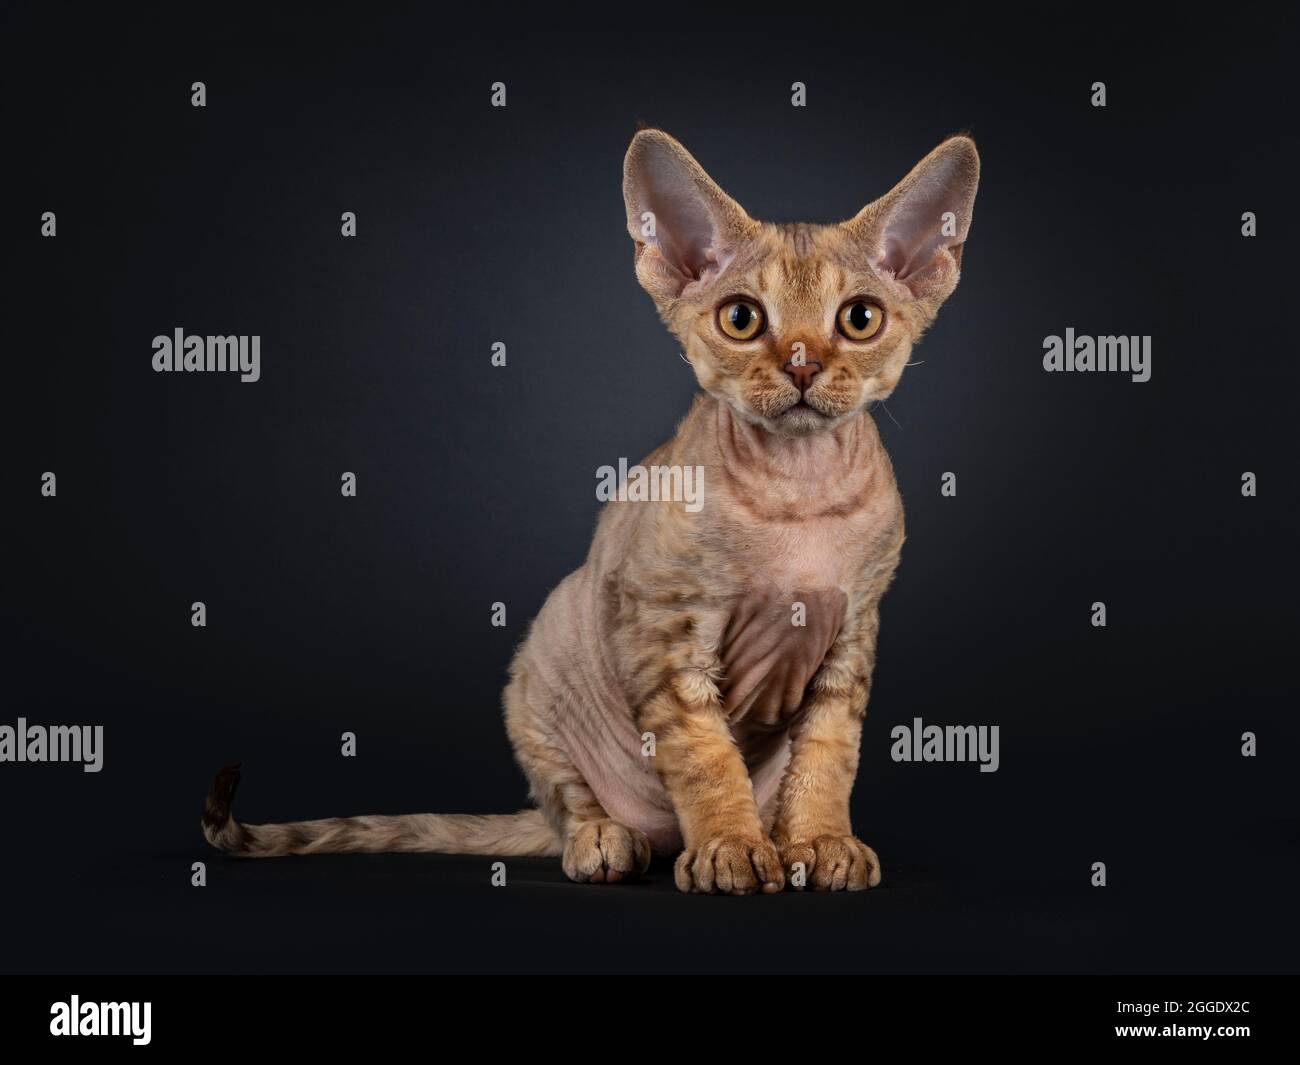 Adorable chaton de chat Devon Rex doré brun, assis face à l'avant incliné vers l'avant. Regardant curiou vers l'appareil photo. Isolé sur un fond noir. Banque D'Images